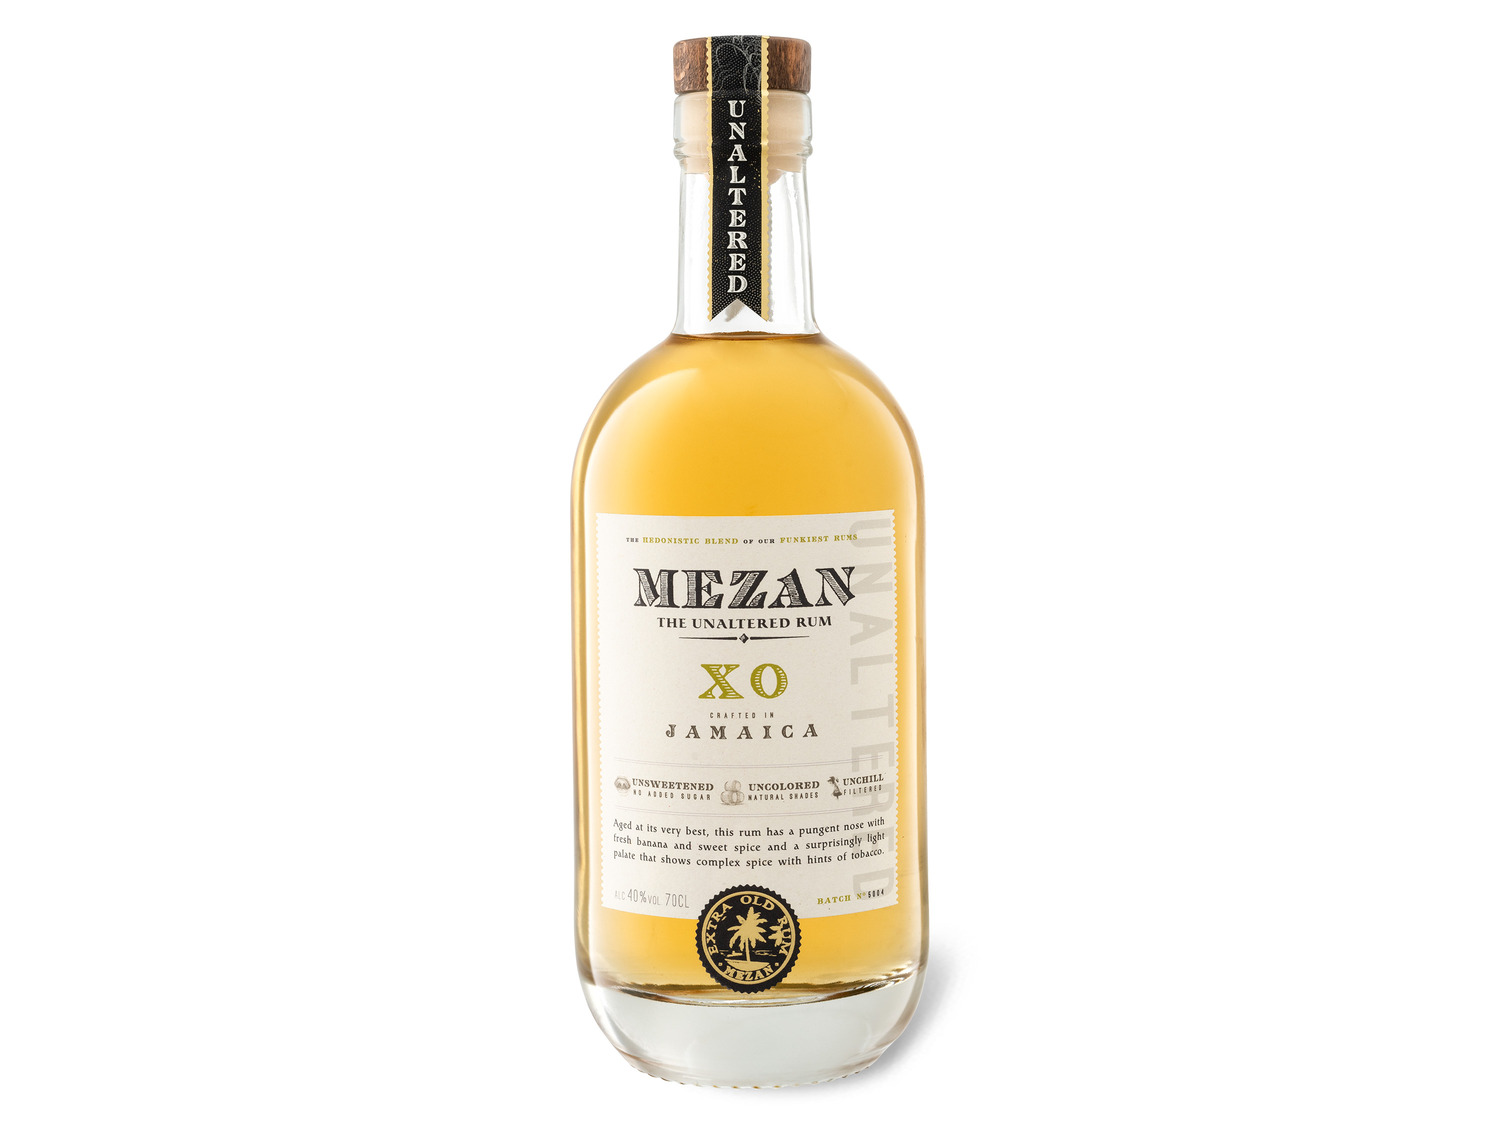 Mezan XO Jamaica Rum 40% online | LIDL Vol kaufen